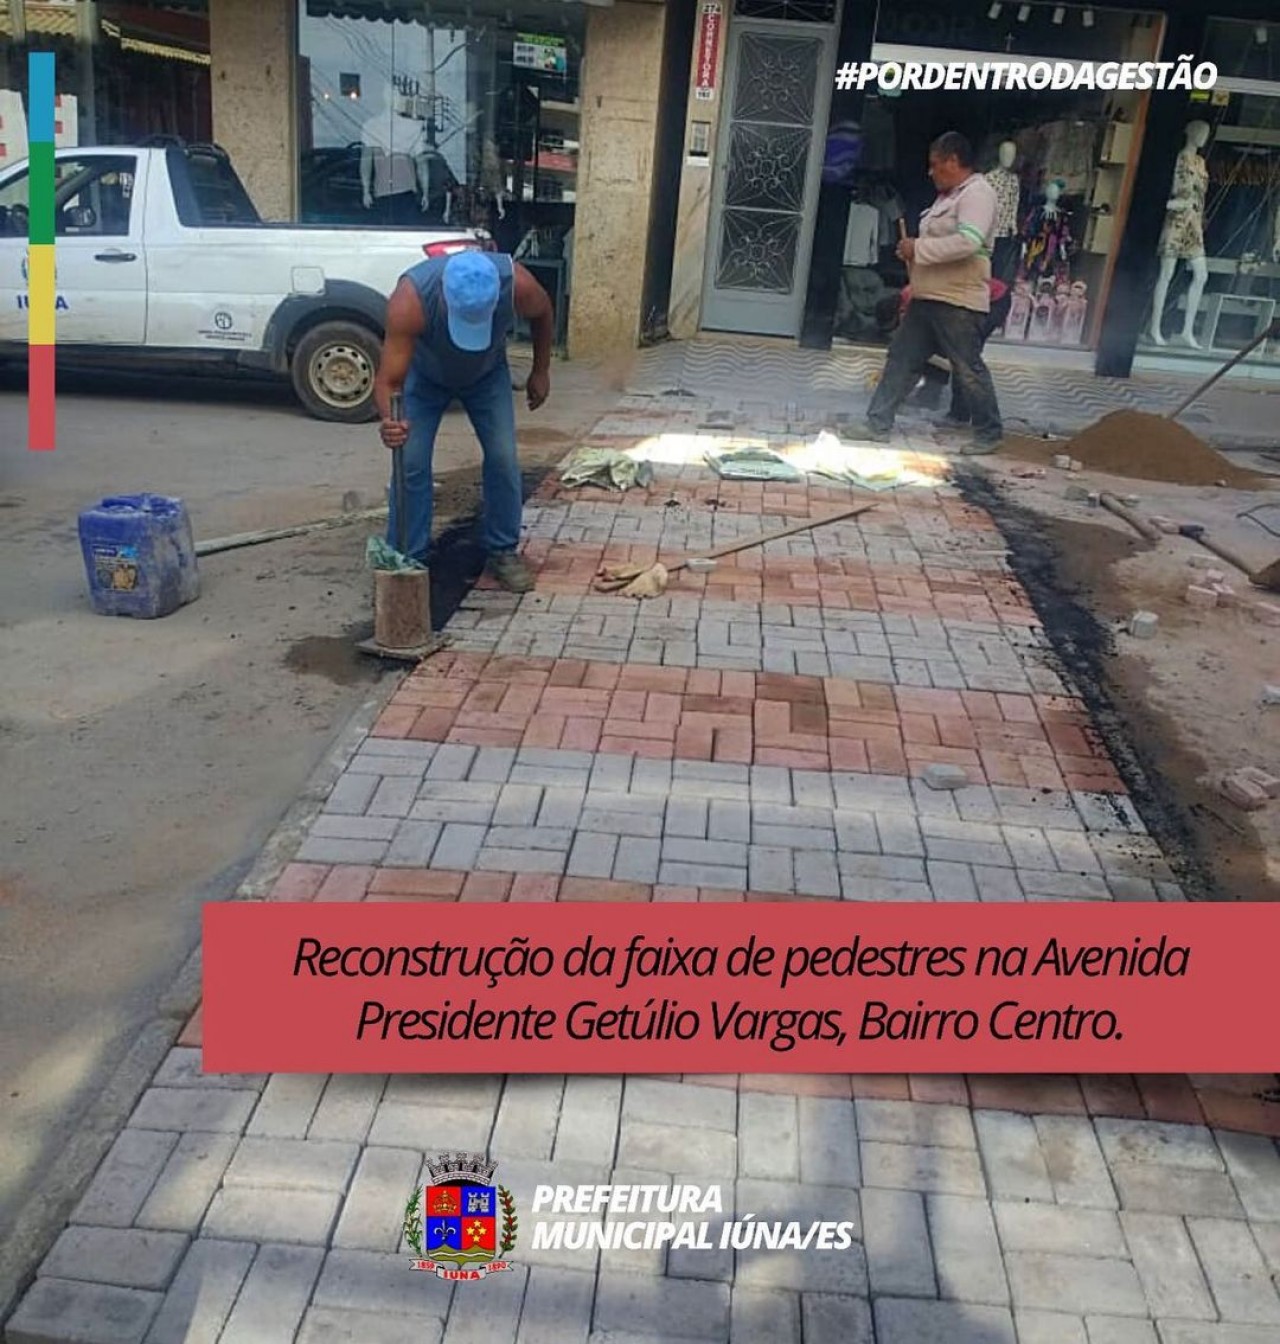 OBRA 45 - reconstrução de faixa de pedestres na Avenida Presidente Getúlio Vargas, Bairro Centro.